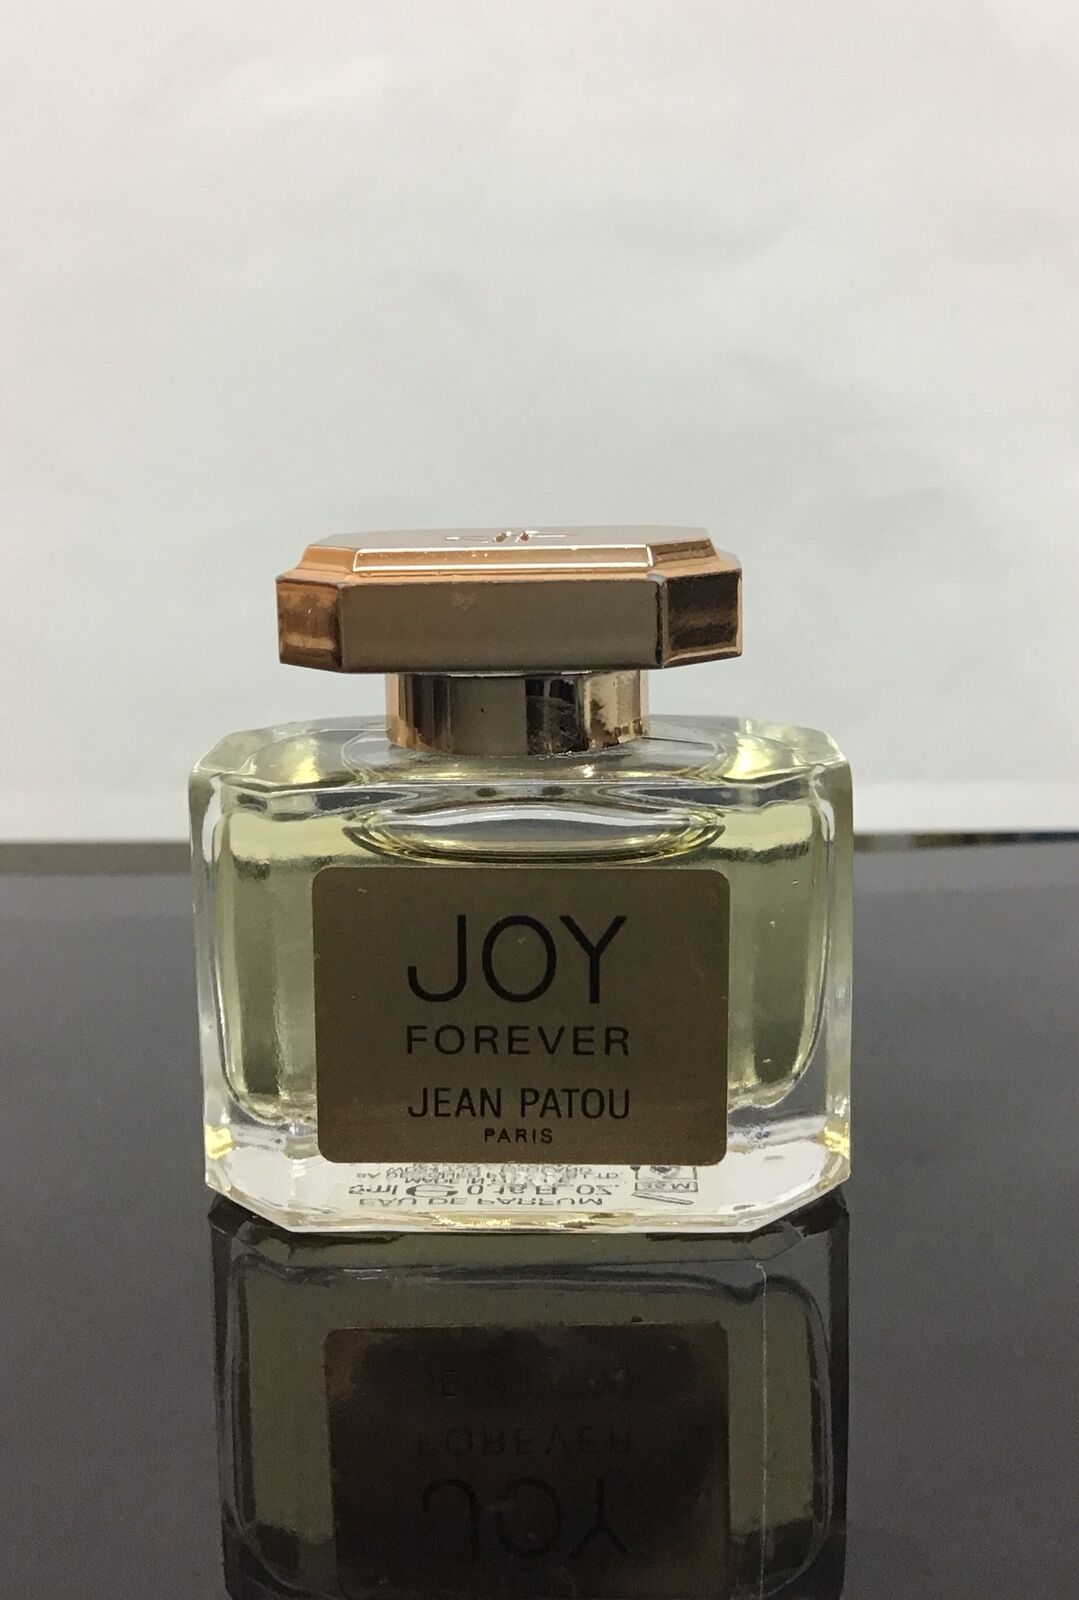 Jean Patou Joy Forever Eau De Parfum Splash Mini 0.16 Fl Oz, As Pictured, No Box